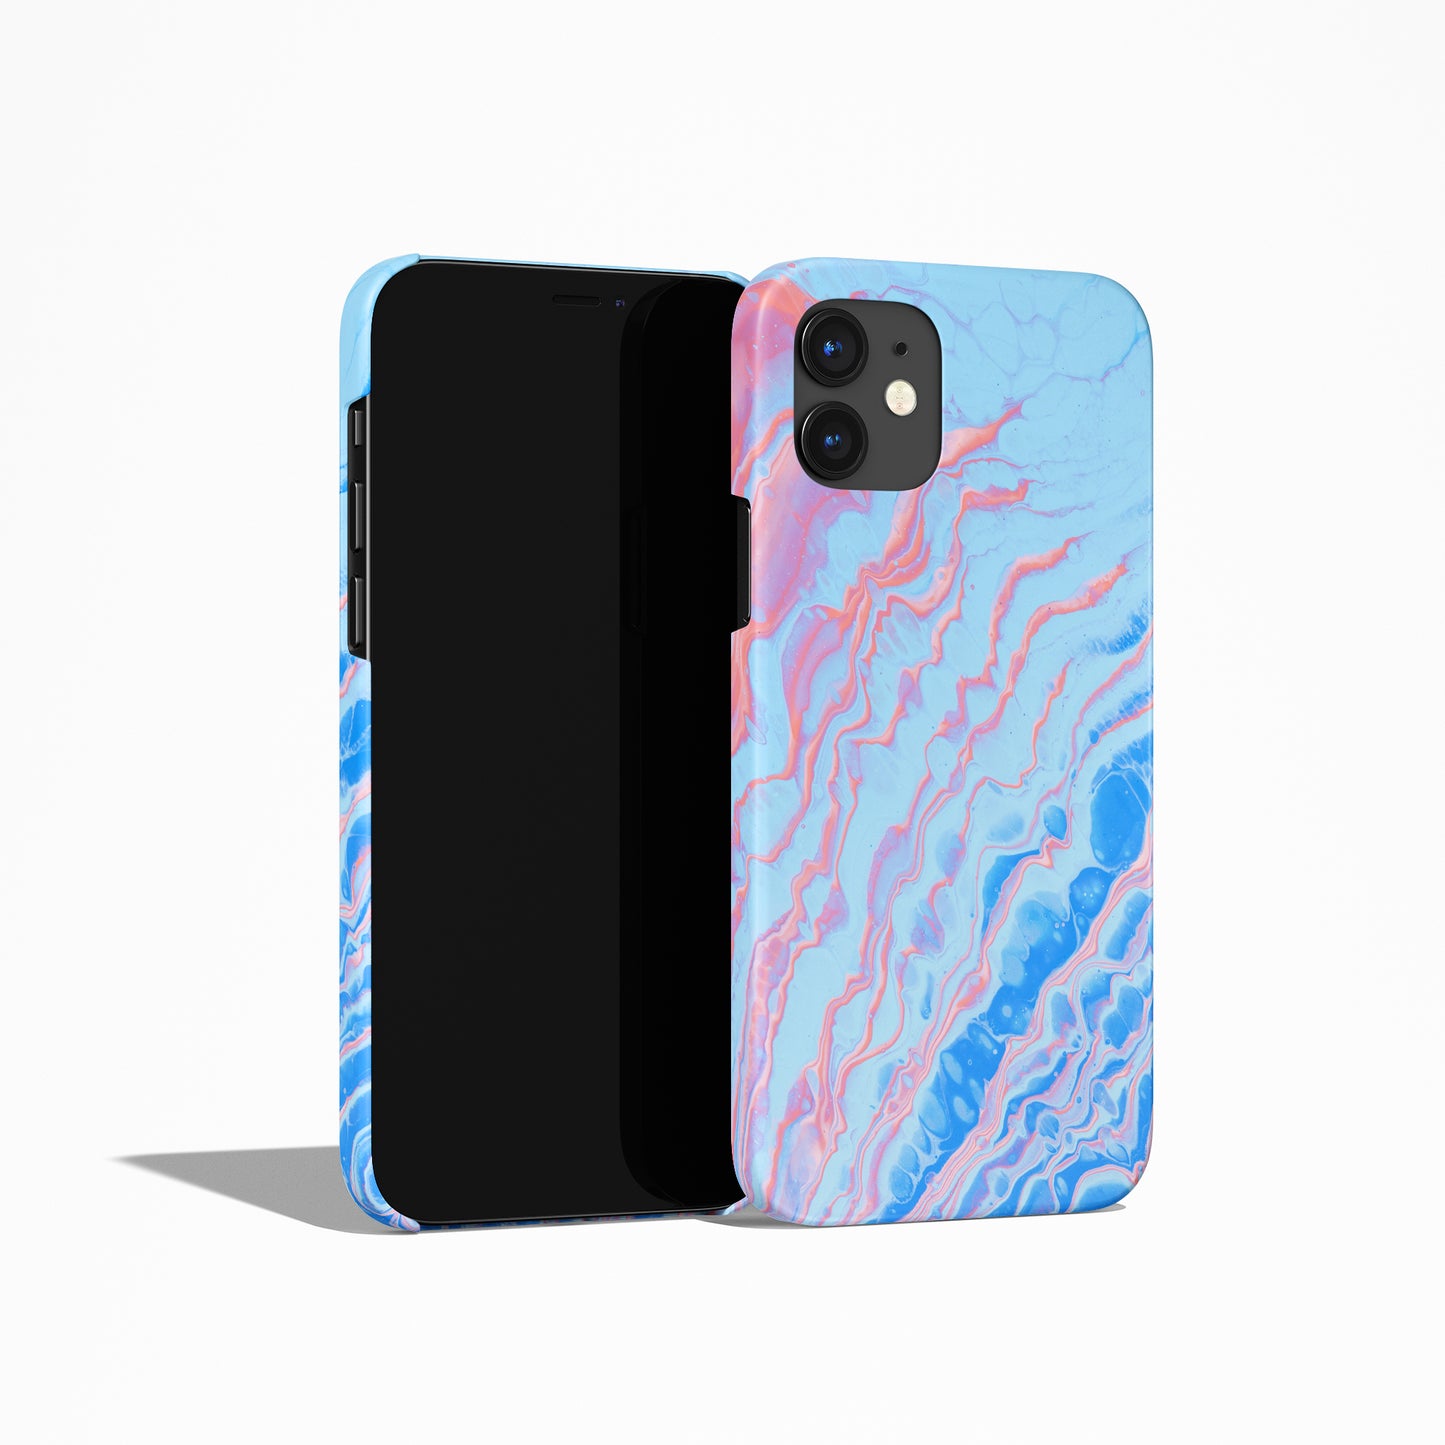 Unique Pastel iPhone Case